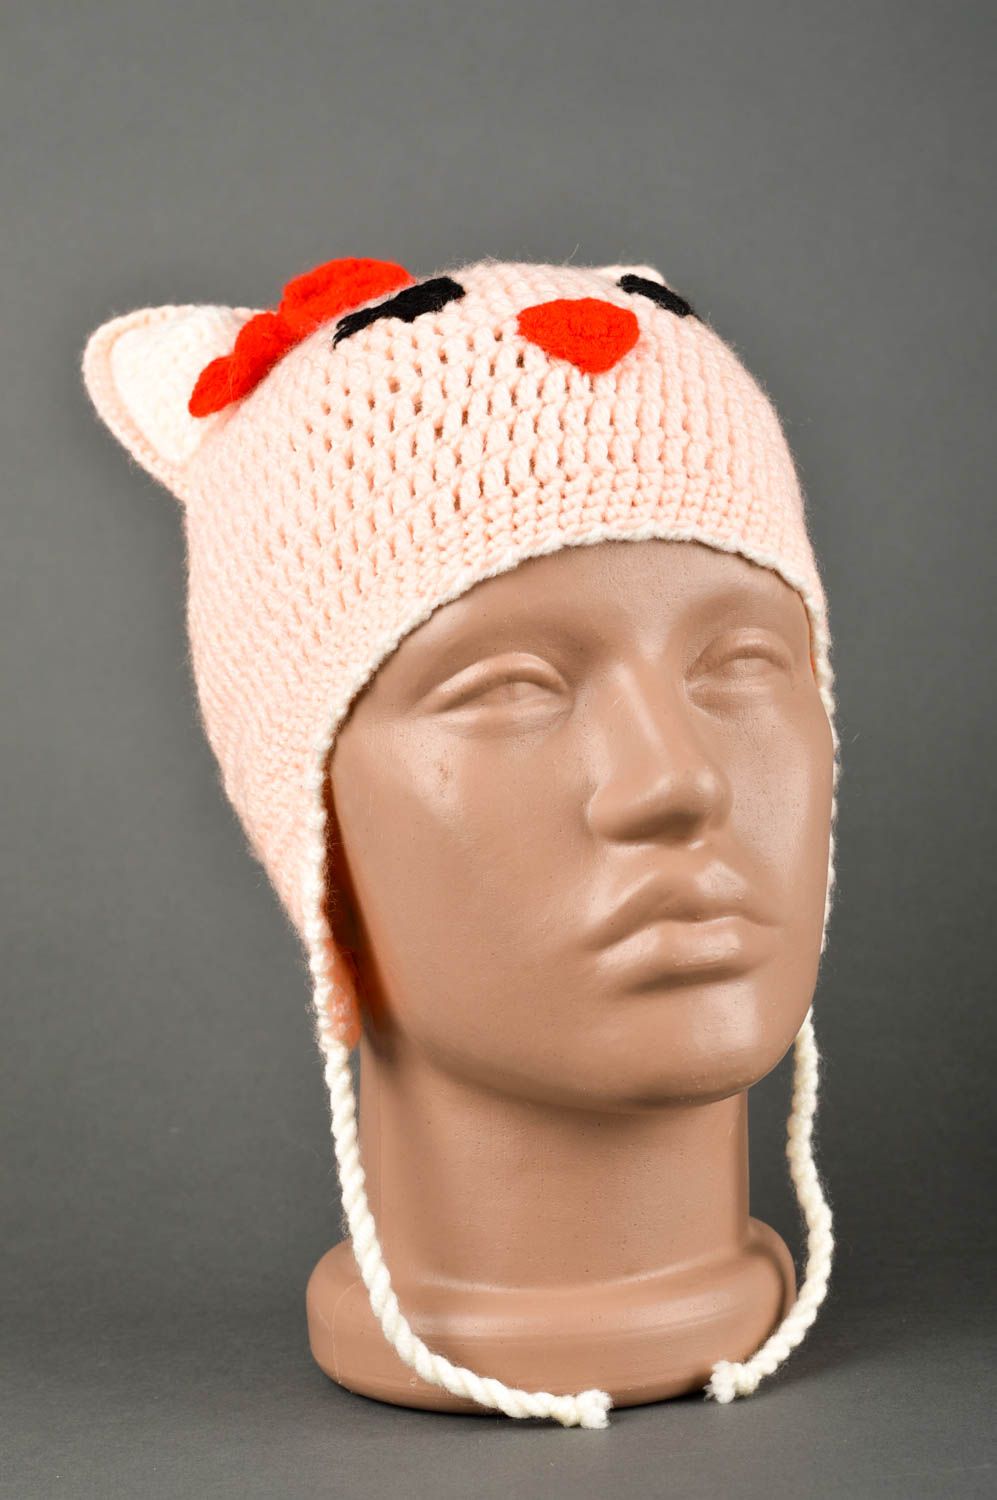 Handmade winter hat warm hat designer hat animal hat goods for children photo 1